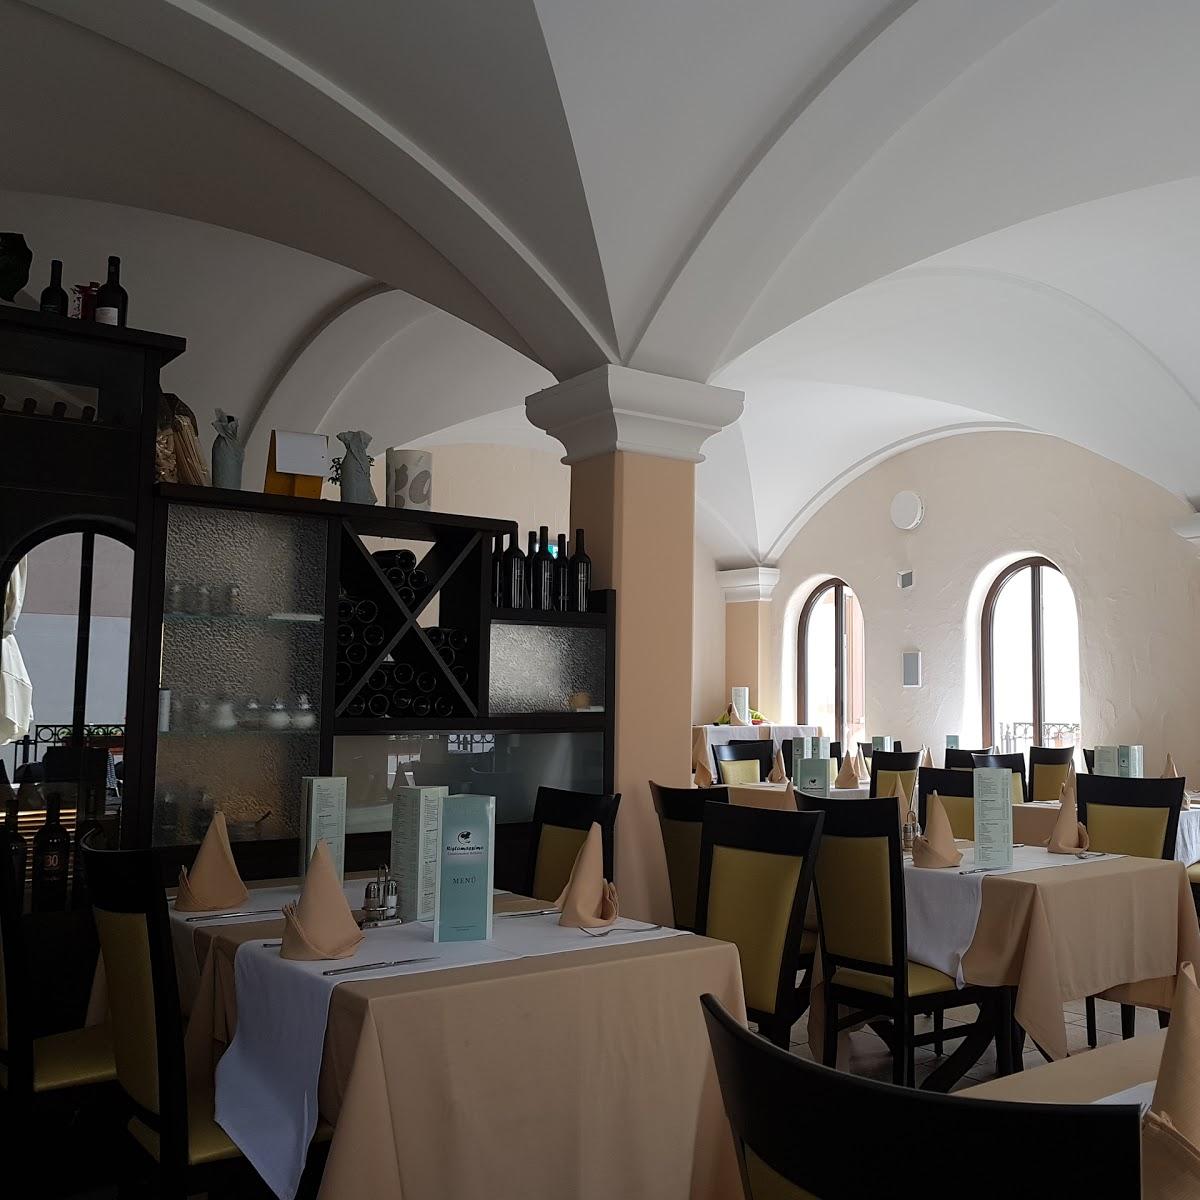 Restaurant "Hotel Ristorante Ristomassimo" in  Buttenwiesen